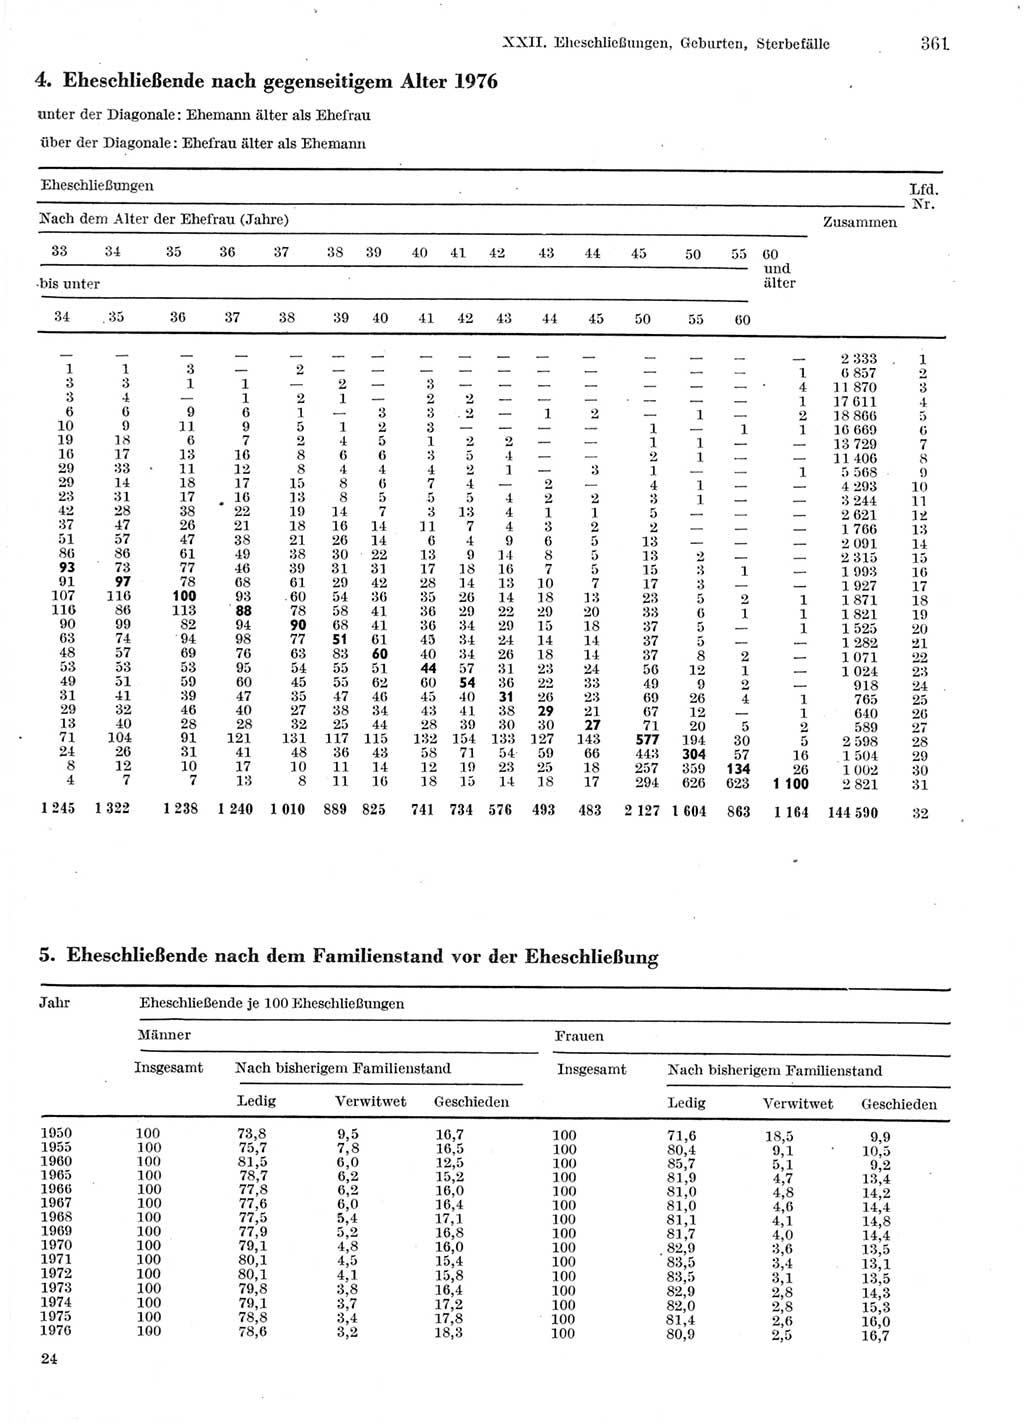 Statistisches Jahrbuch der Deutschen Demokratischen Republik (DDR) 1978, Seite 361 (Stat. Jb. DDR 1978, S. 361)